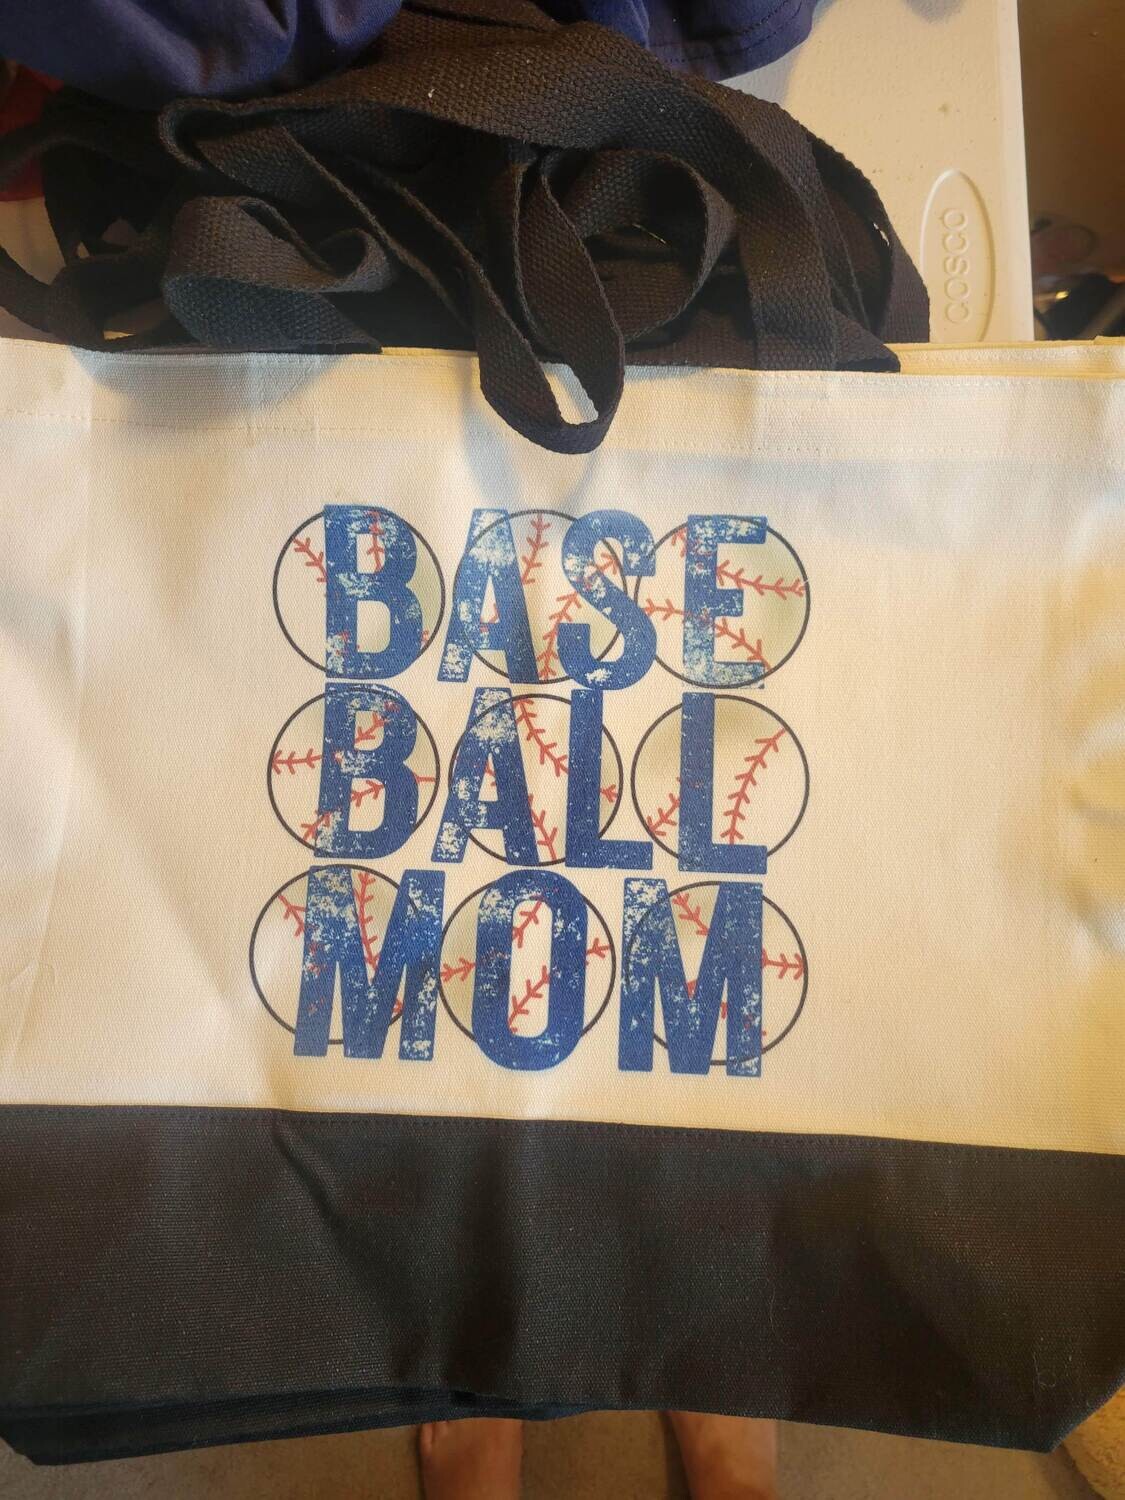 Baseball Mom Tote bag